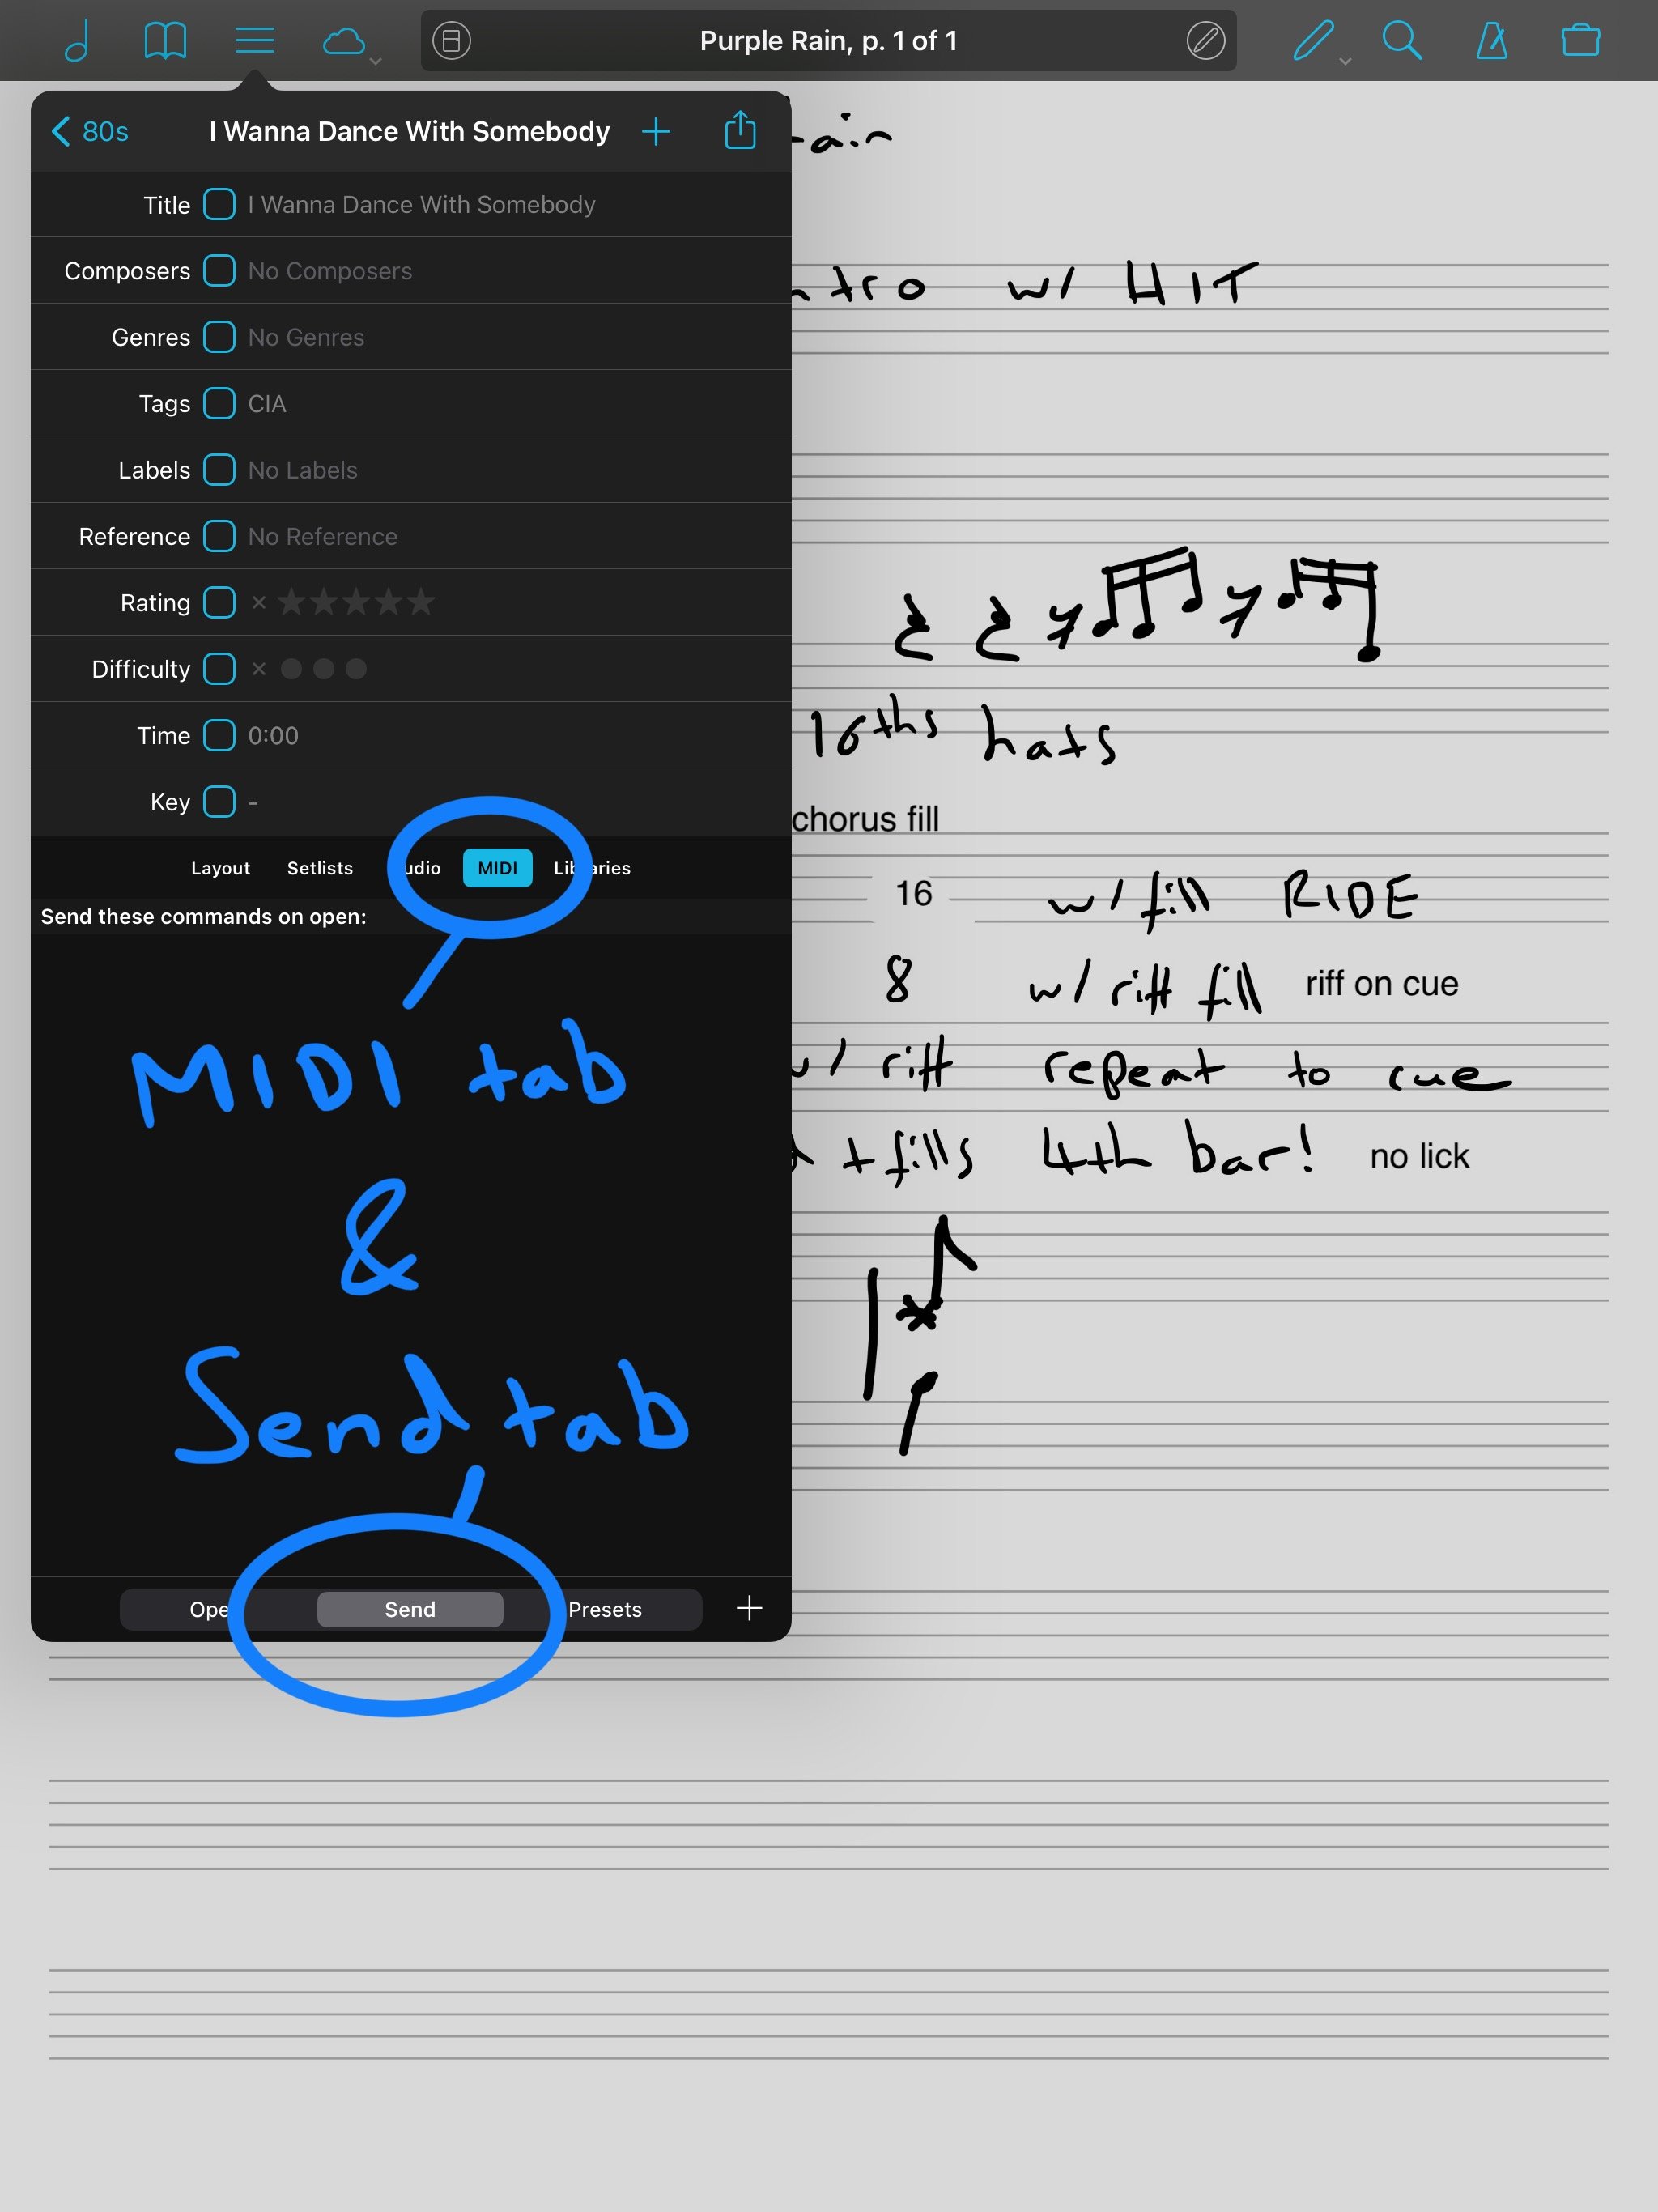 Tap MIDI &amp; then Send